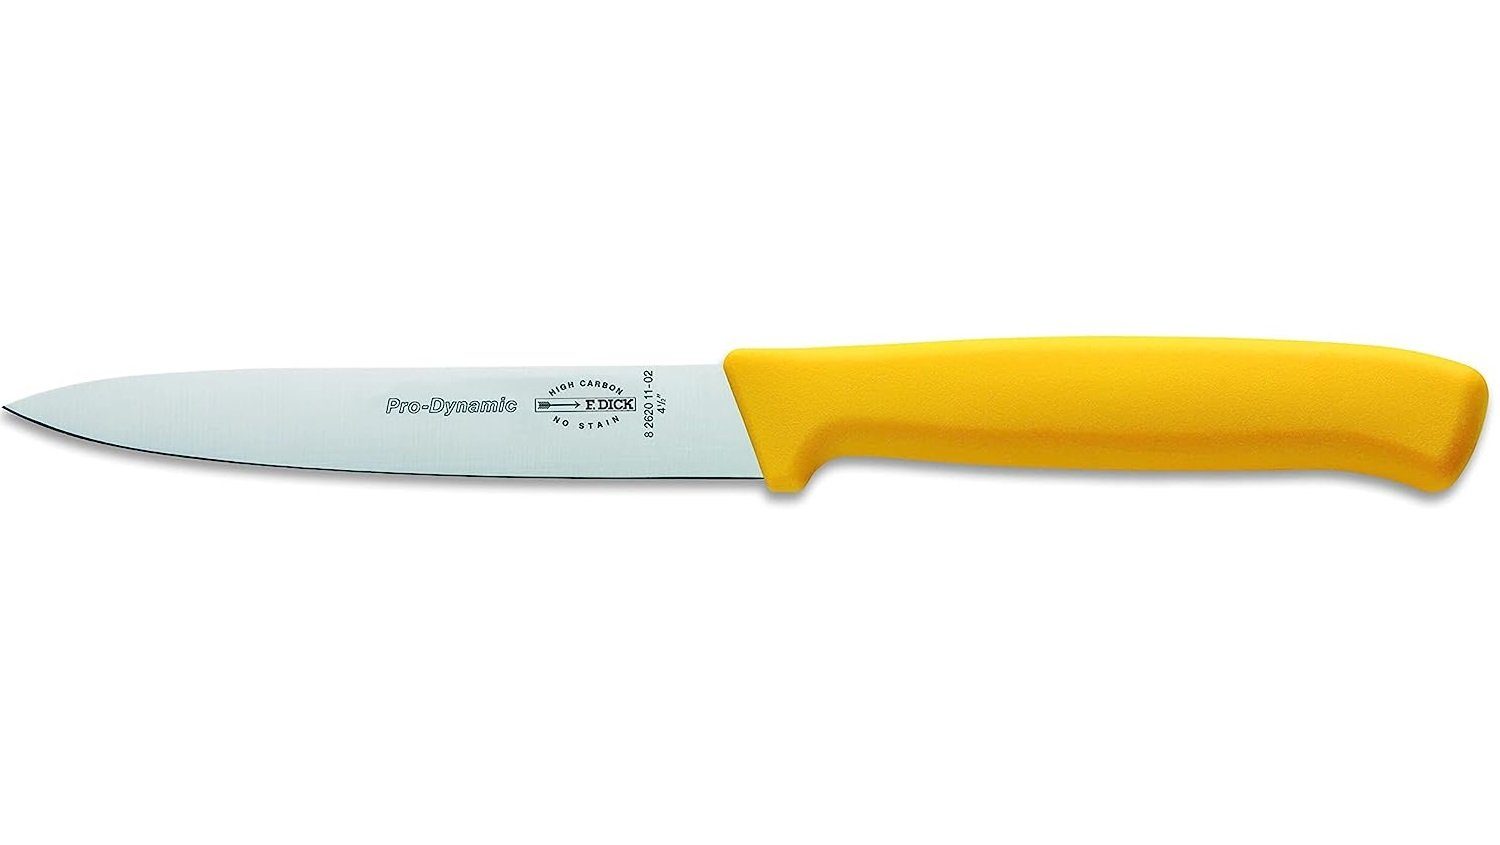 F. DICK Universalküchenmesser F. DICK ProDynamic Küchenmesser gelb 11 cm Kochmesser kleine